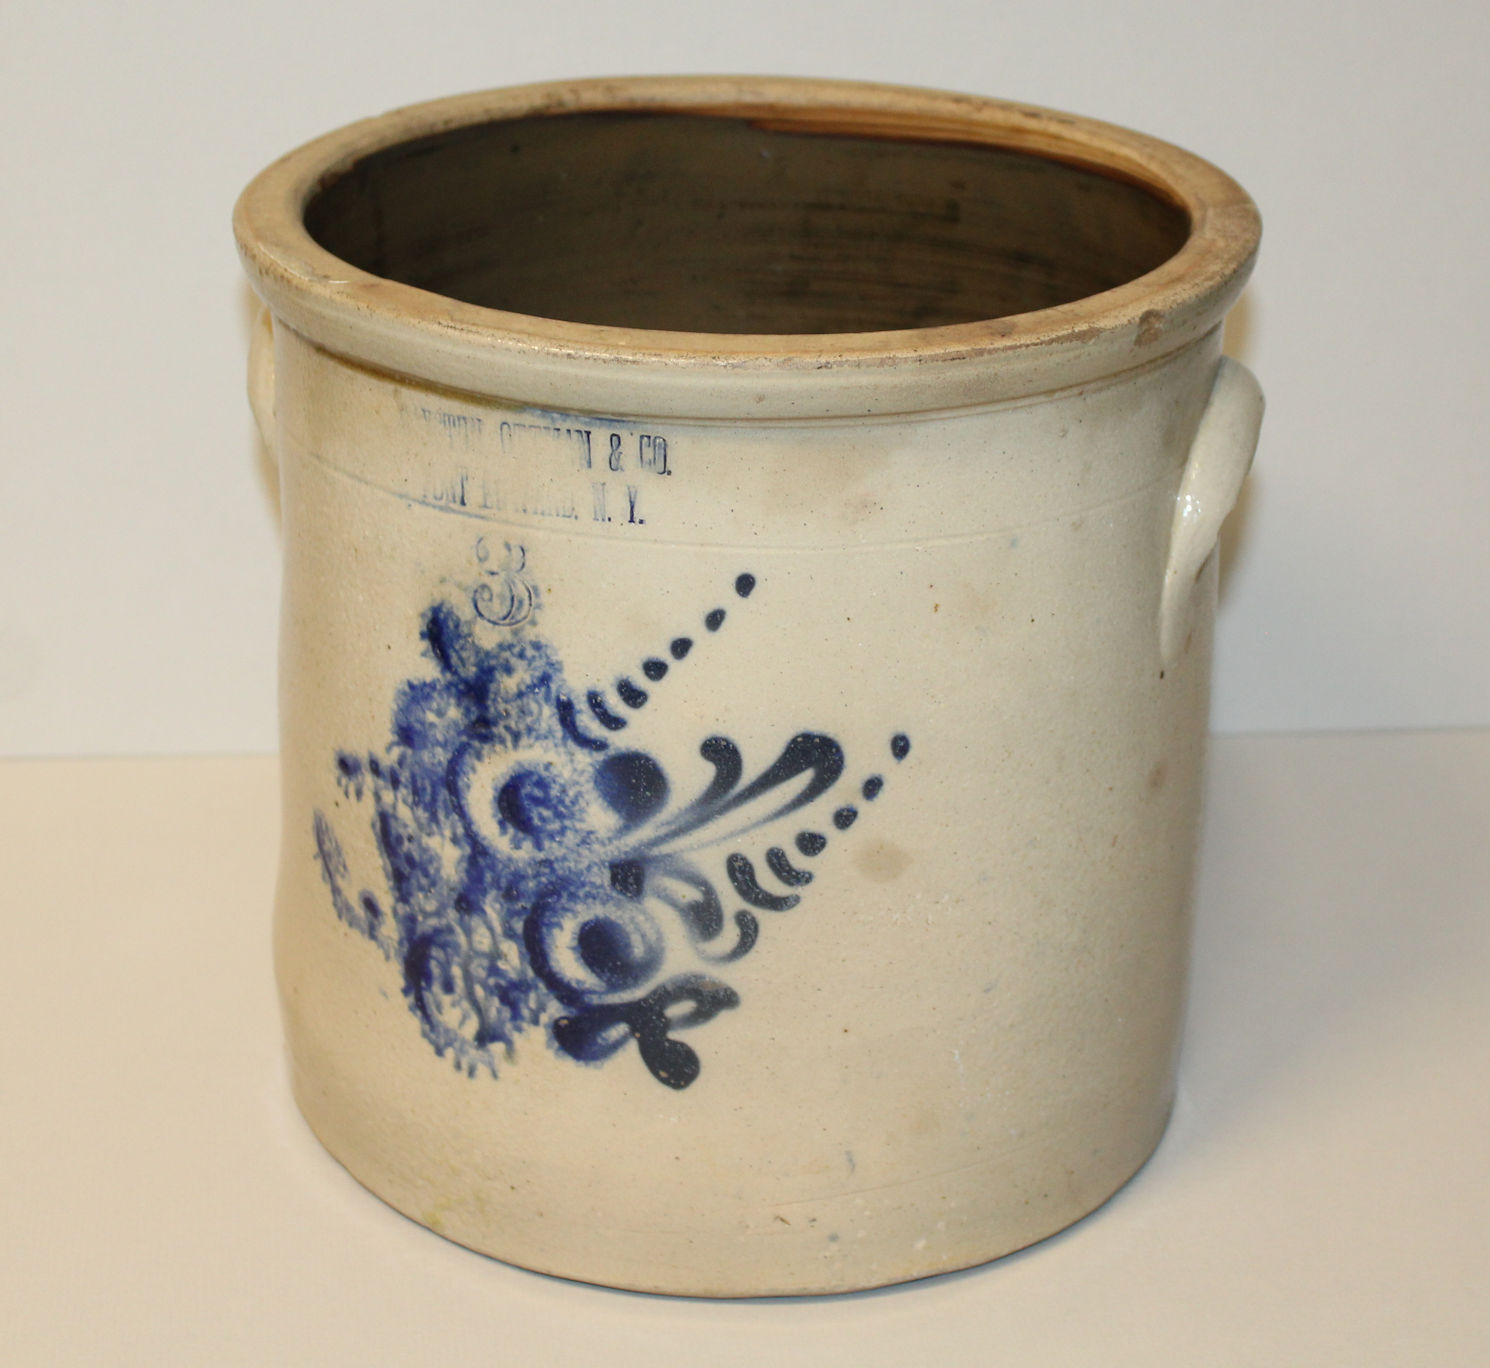 Antique 3 Gallon Salt Glaze Stoneware Crock - 1870 - Haxstun, Ottman & Co.  Fort Edward, NY